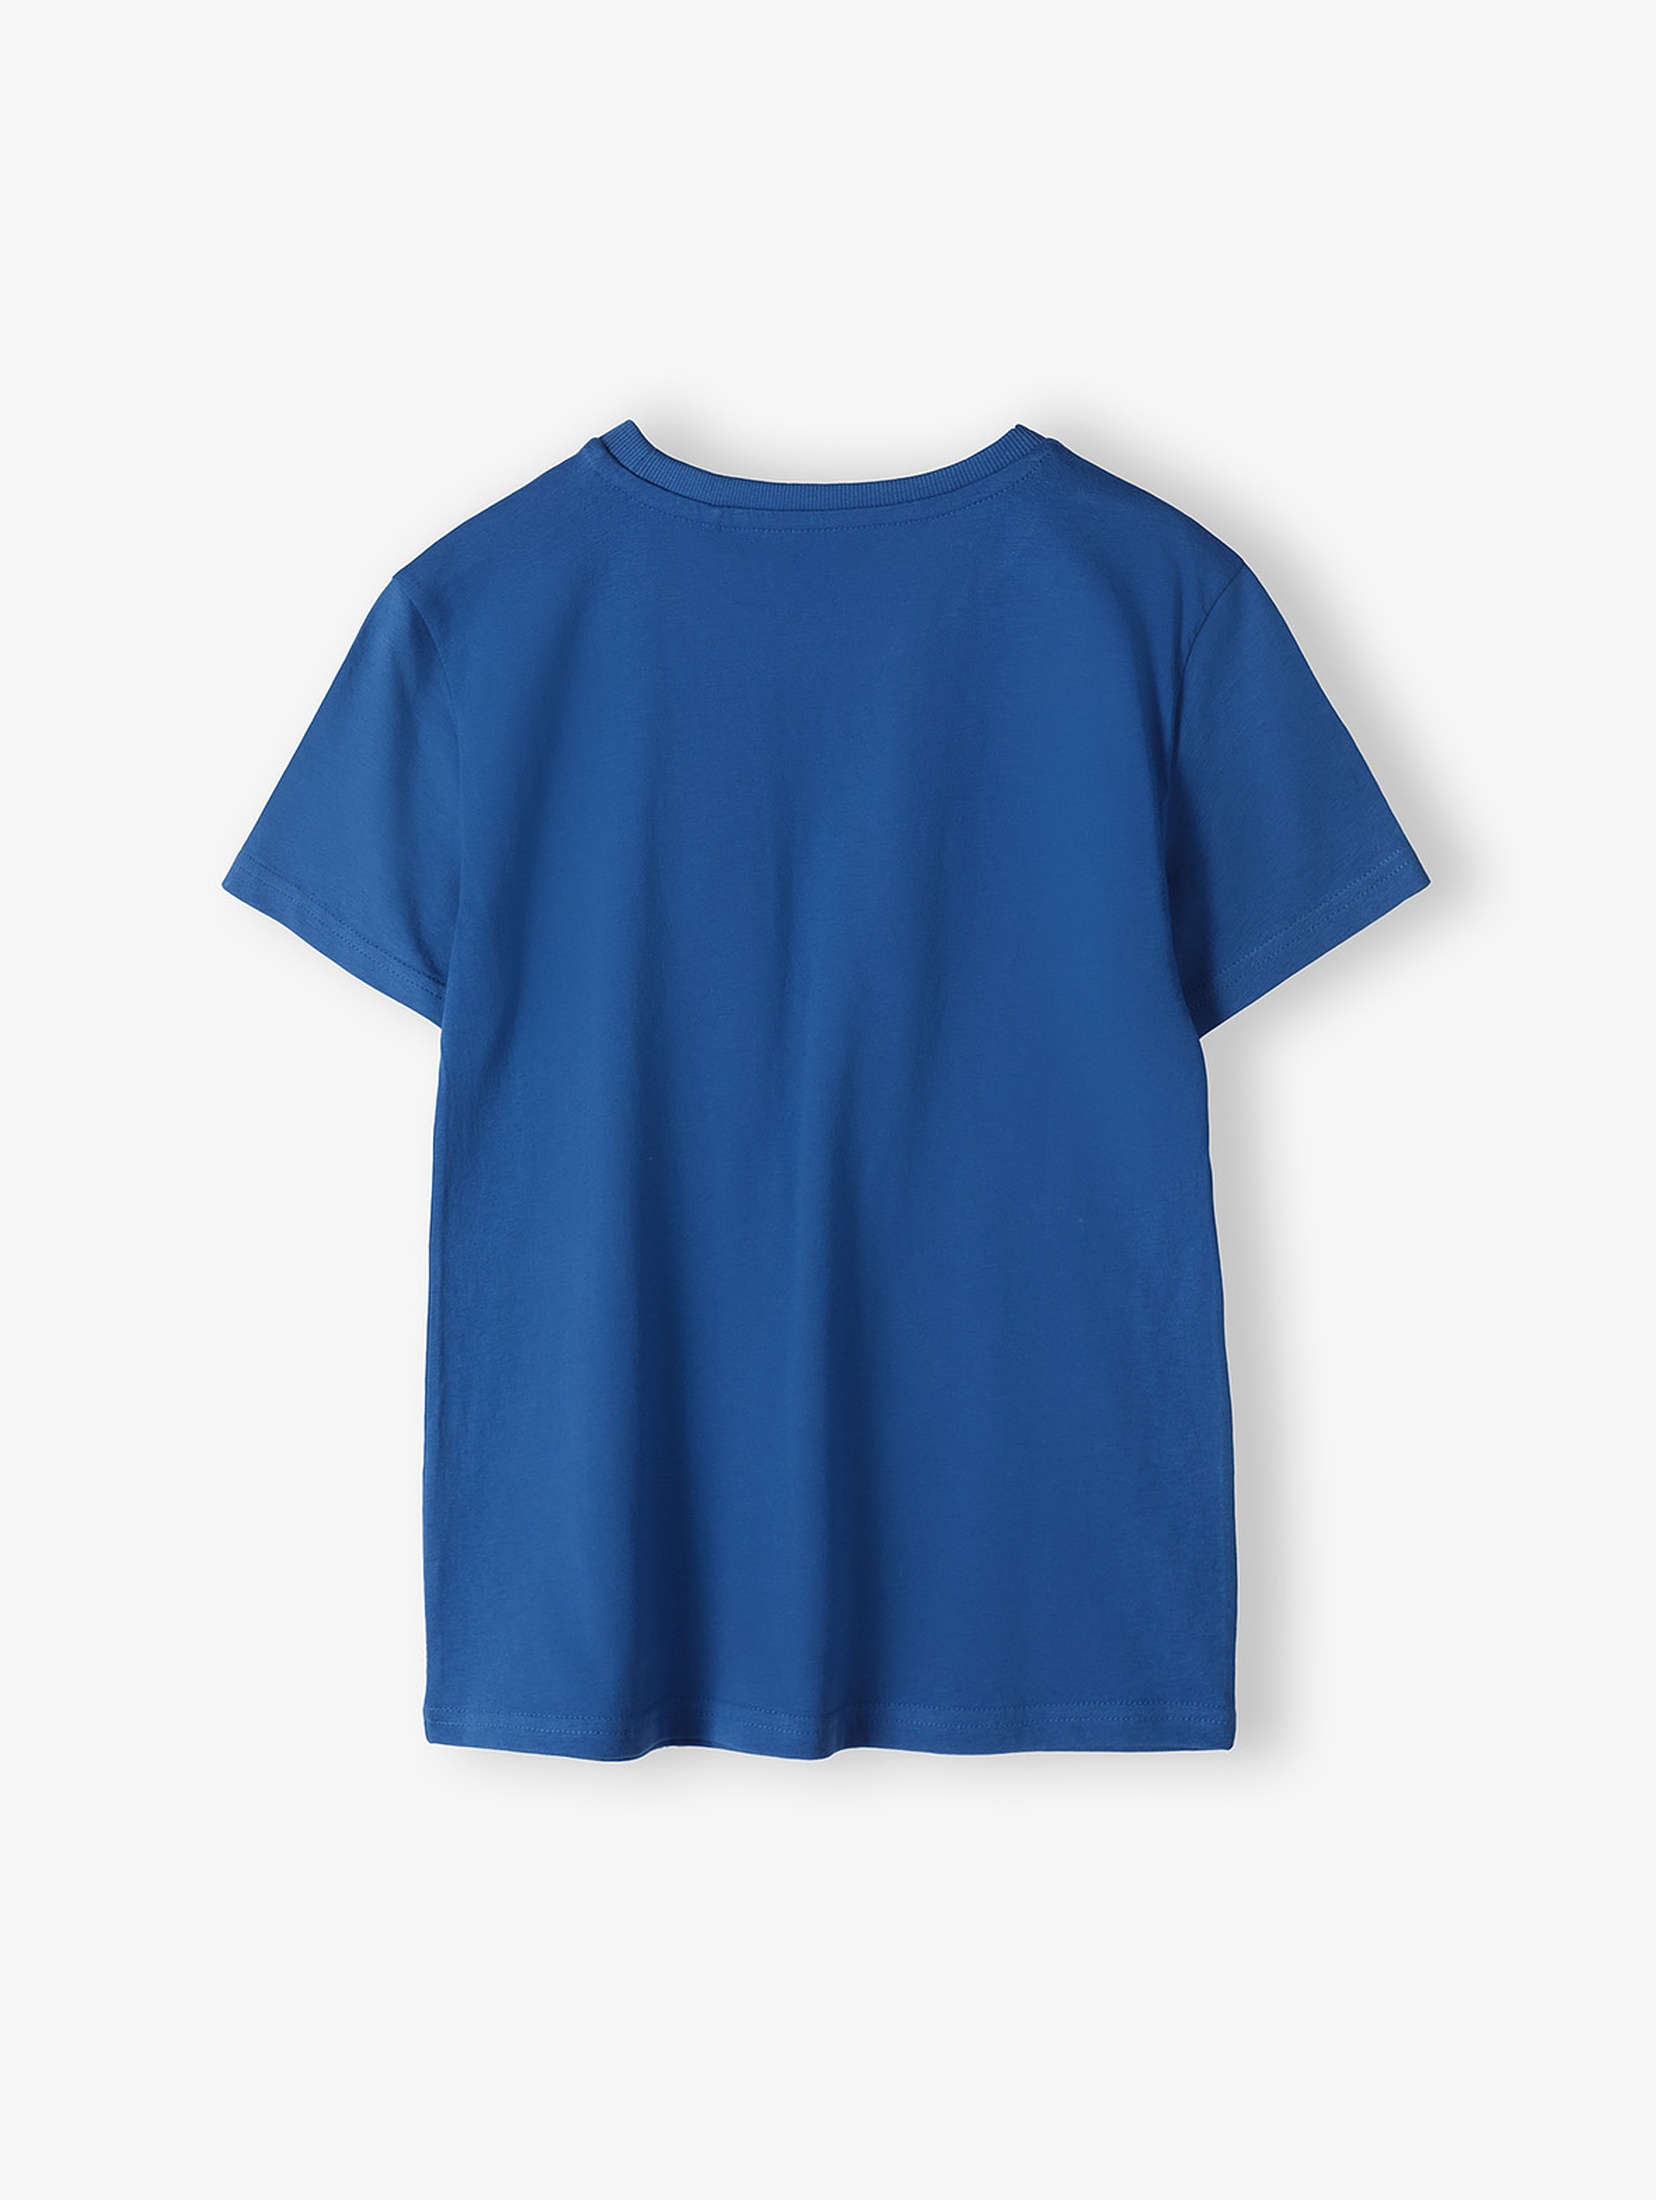 Niebieski t-shirt chłopięcy bawełniany z nadrukiem dinozaura